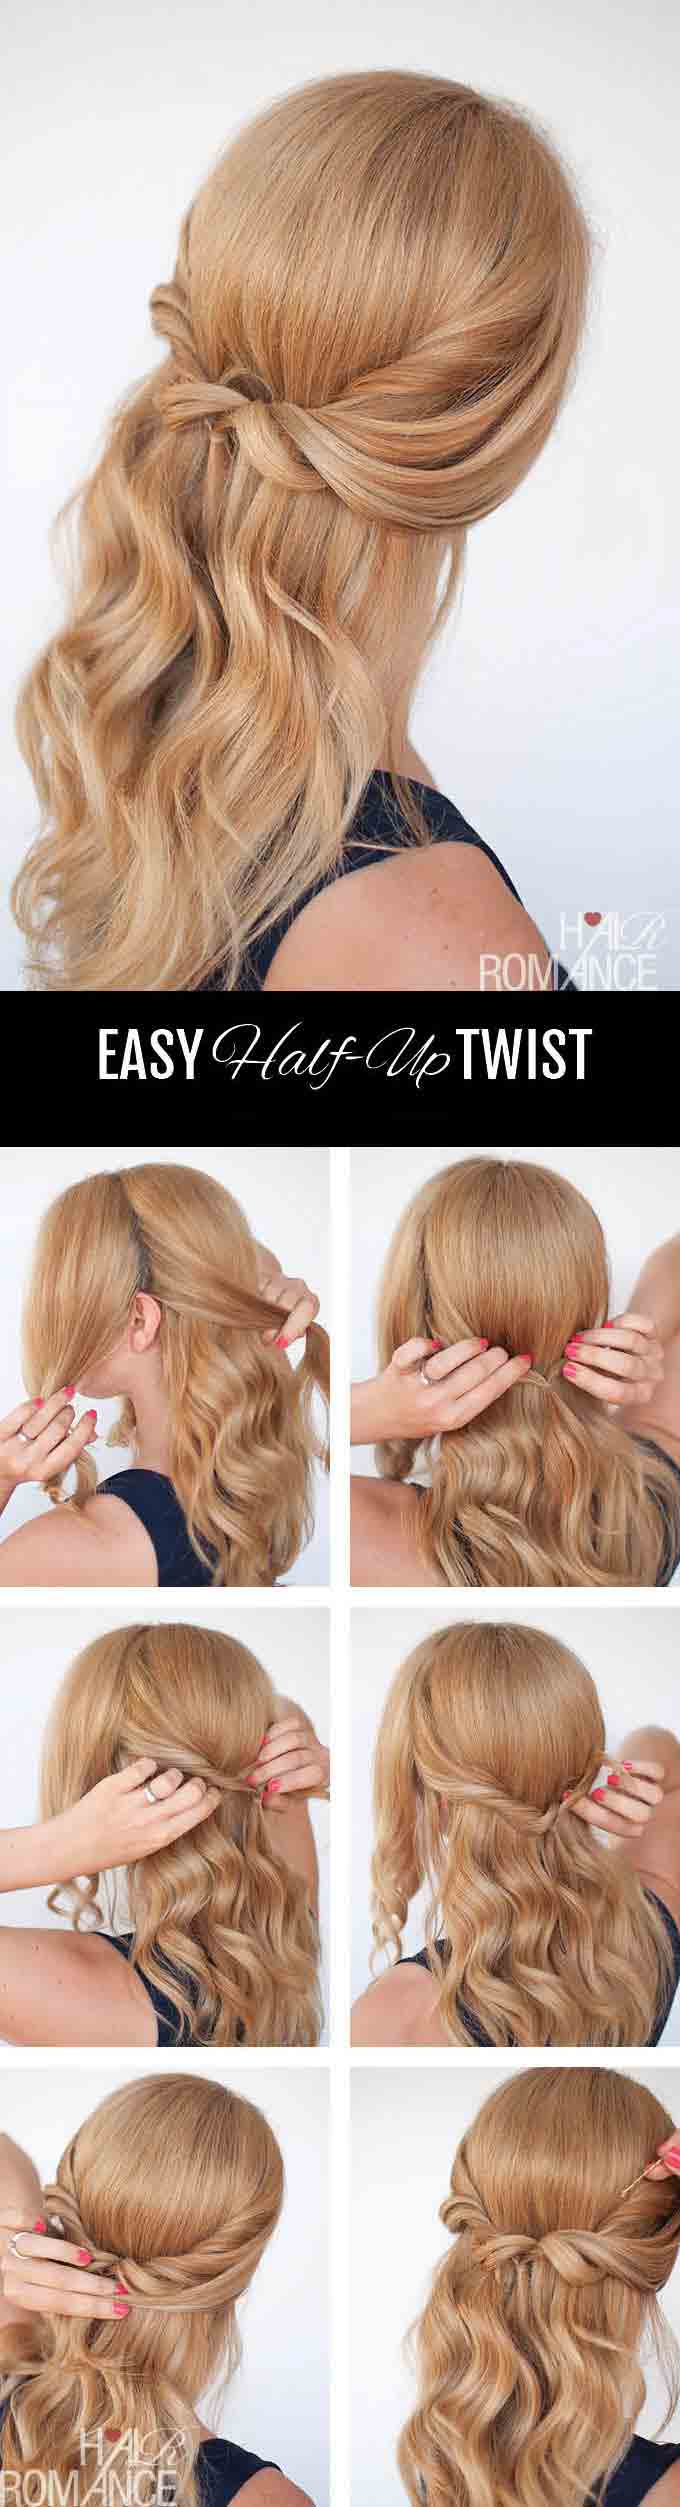 Hair twist hairstyle step by step tutorial